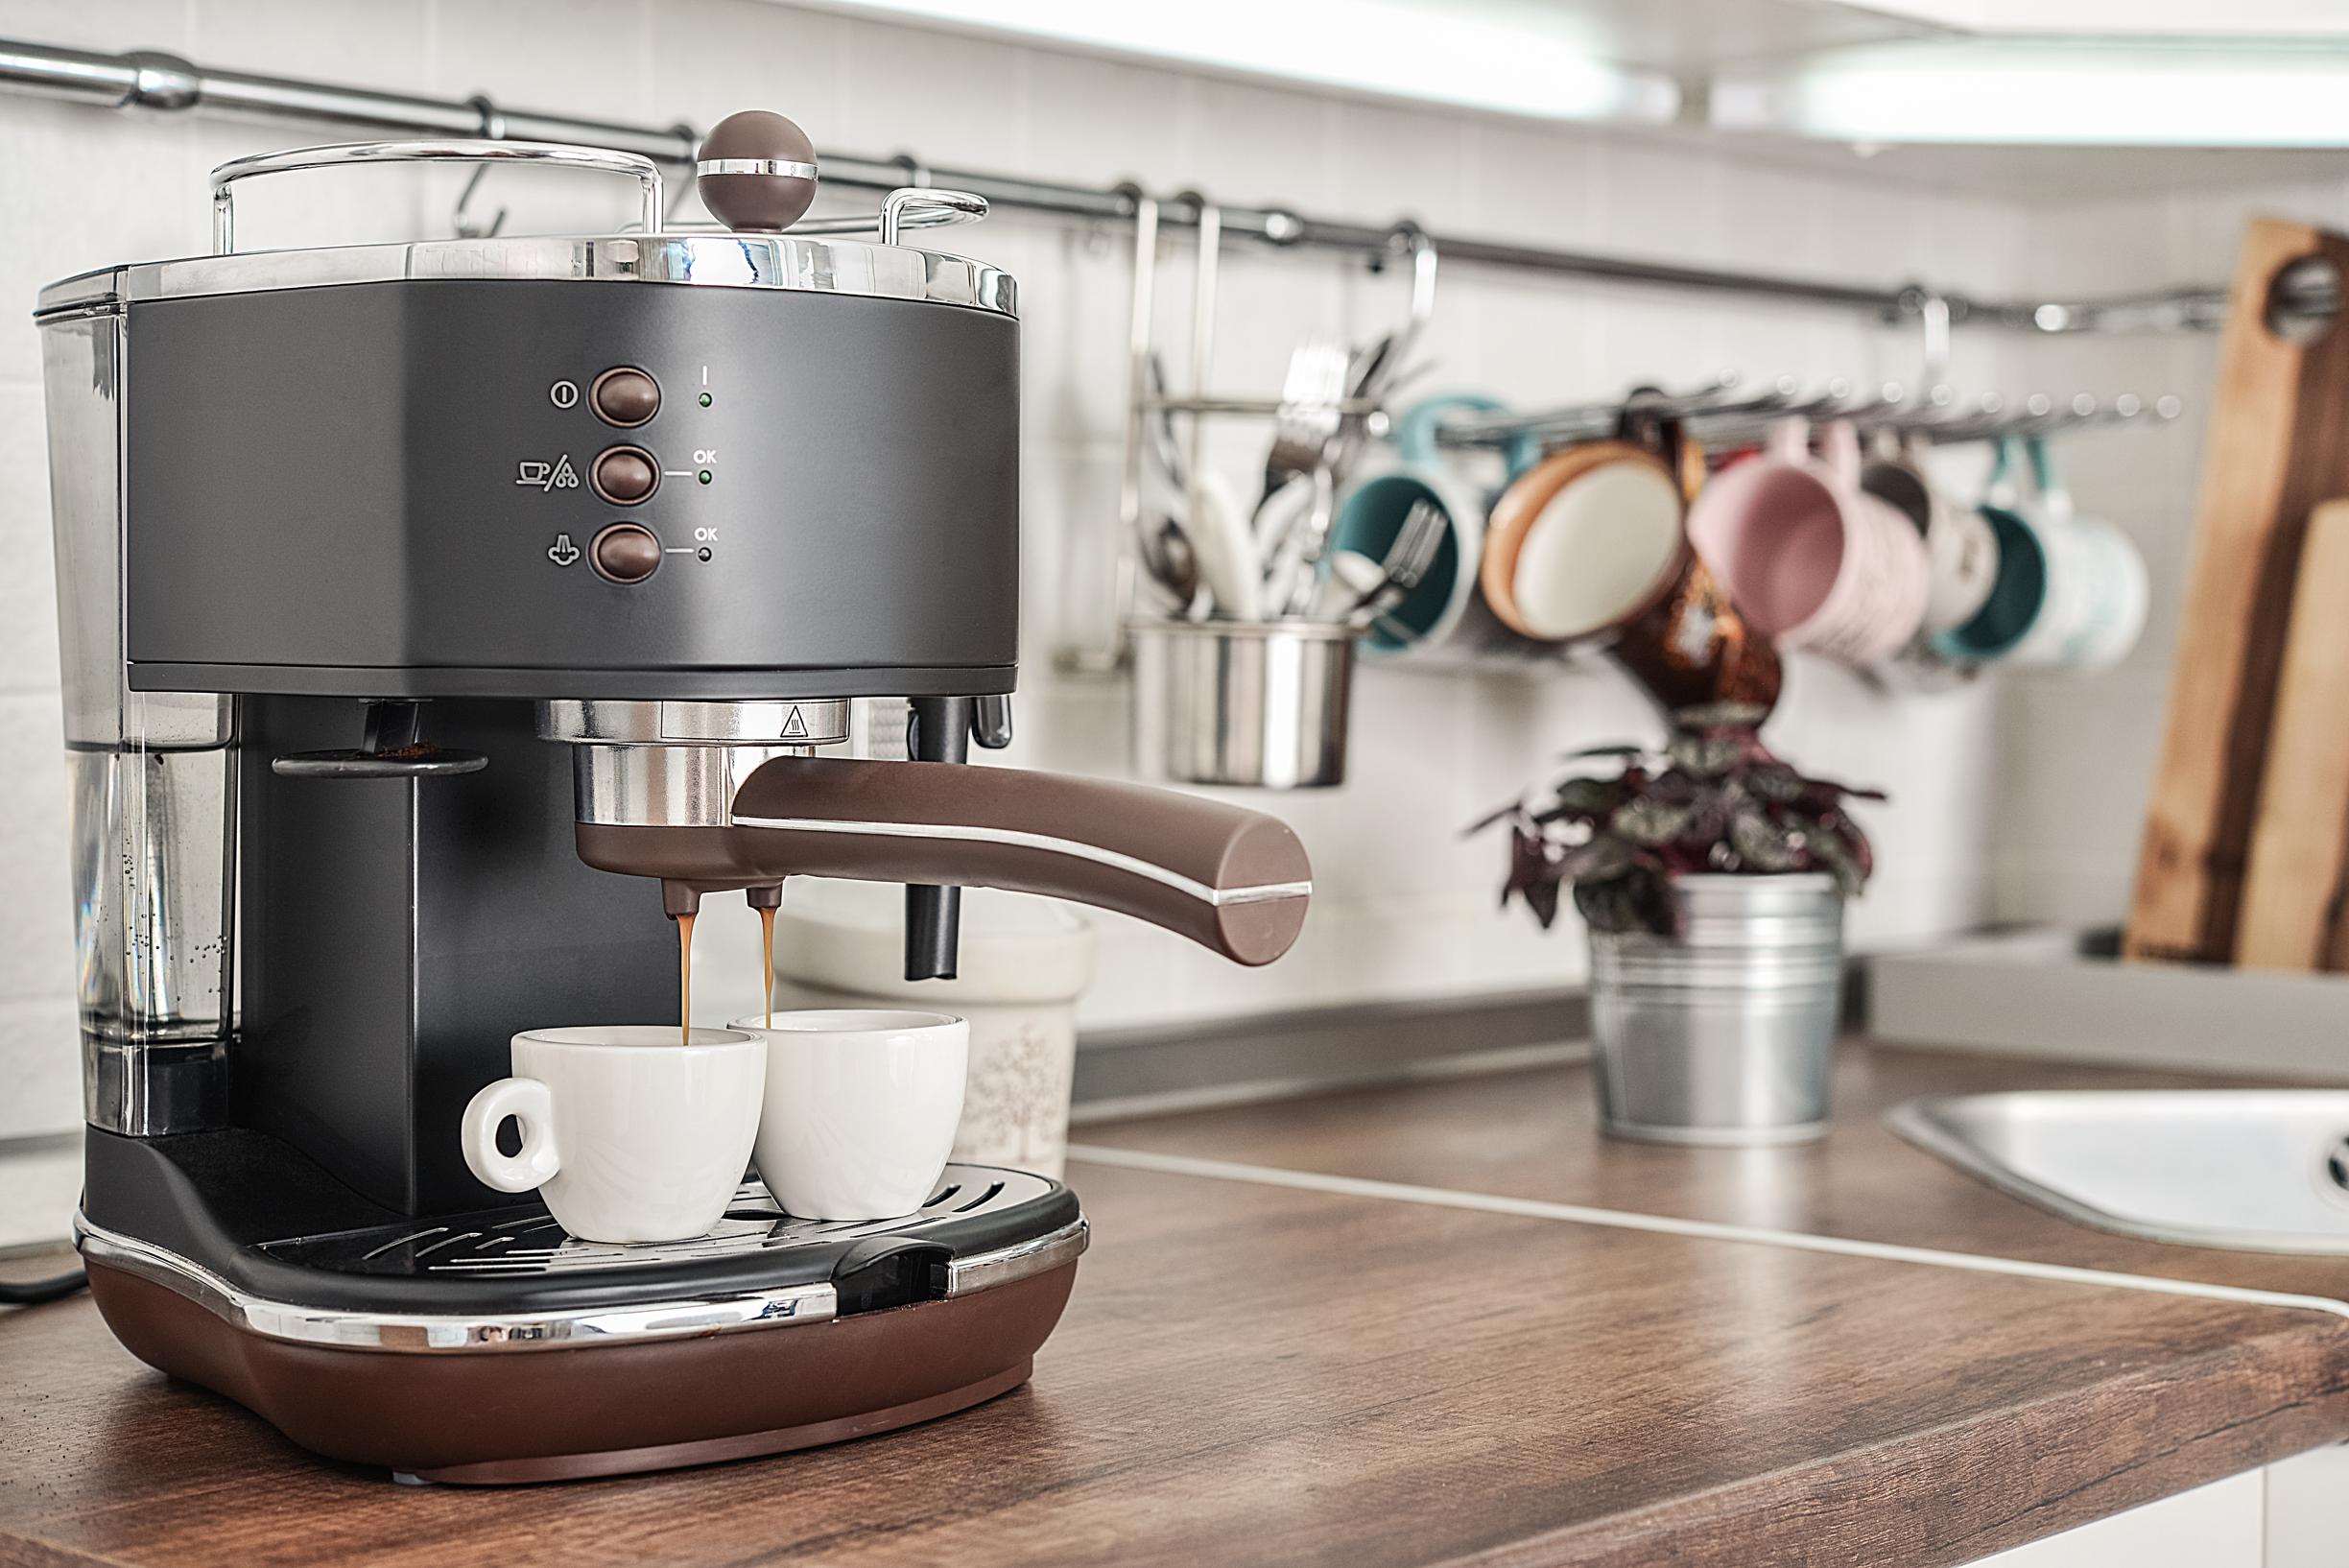 vies smaakje in de koffie: met de tips van onze huishoudexpert maak je koffiemachine Het Nieuwsblad Mobile